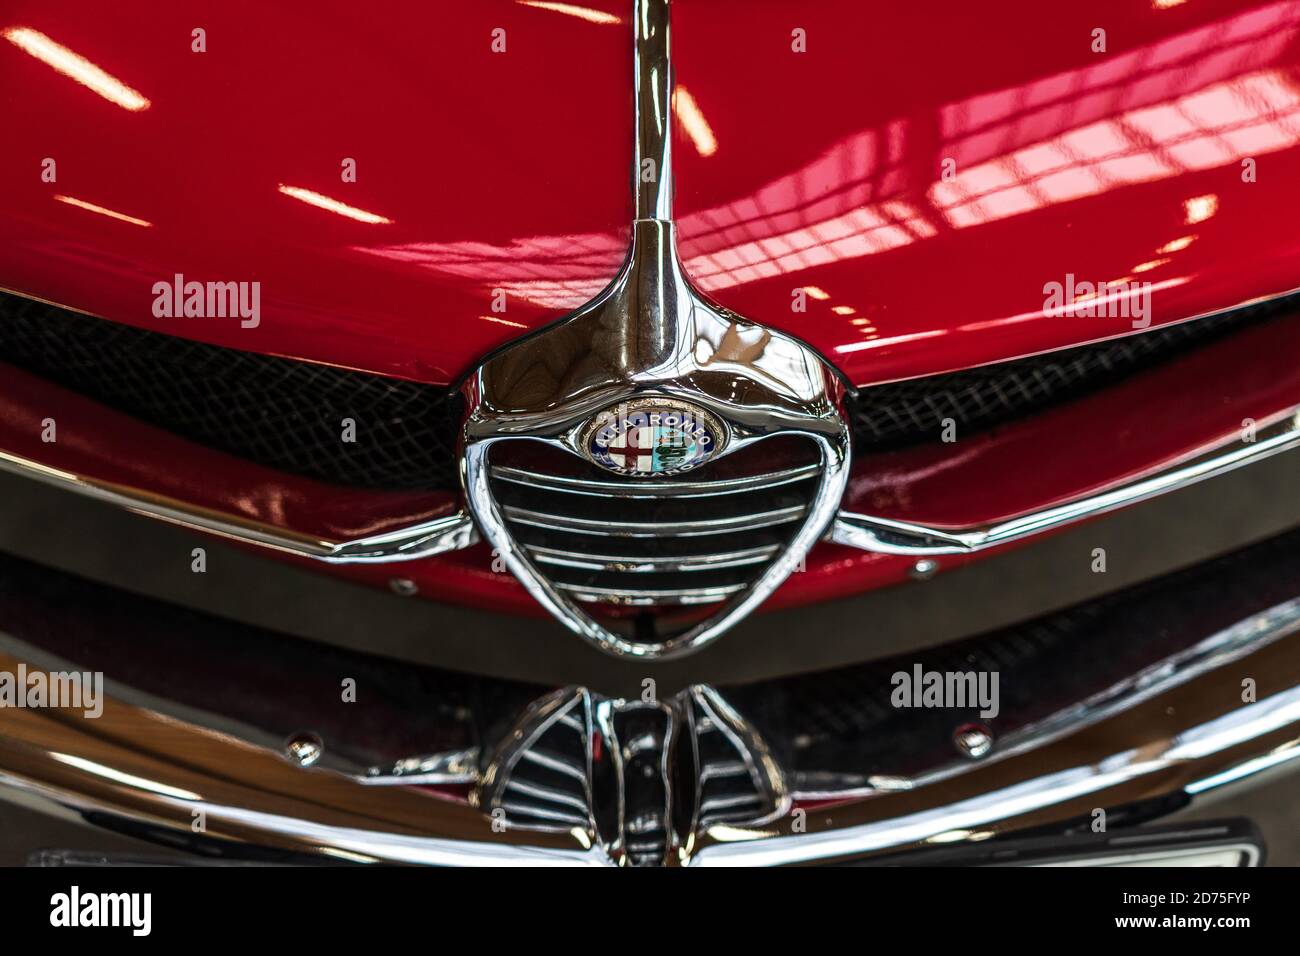 PAARE im GLIEN, DEUTSCHLAND - 03. OKTOBER 2020: Das vordere Emblem des Sportwagens Alfa Romeo Giulietta Sprint Speciale. Karosseriebauer Bertone. Stockfoto